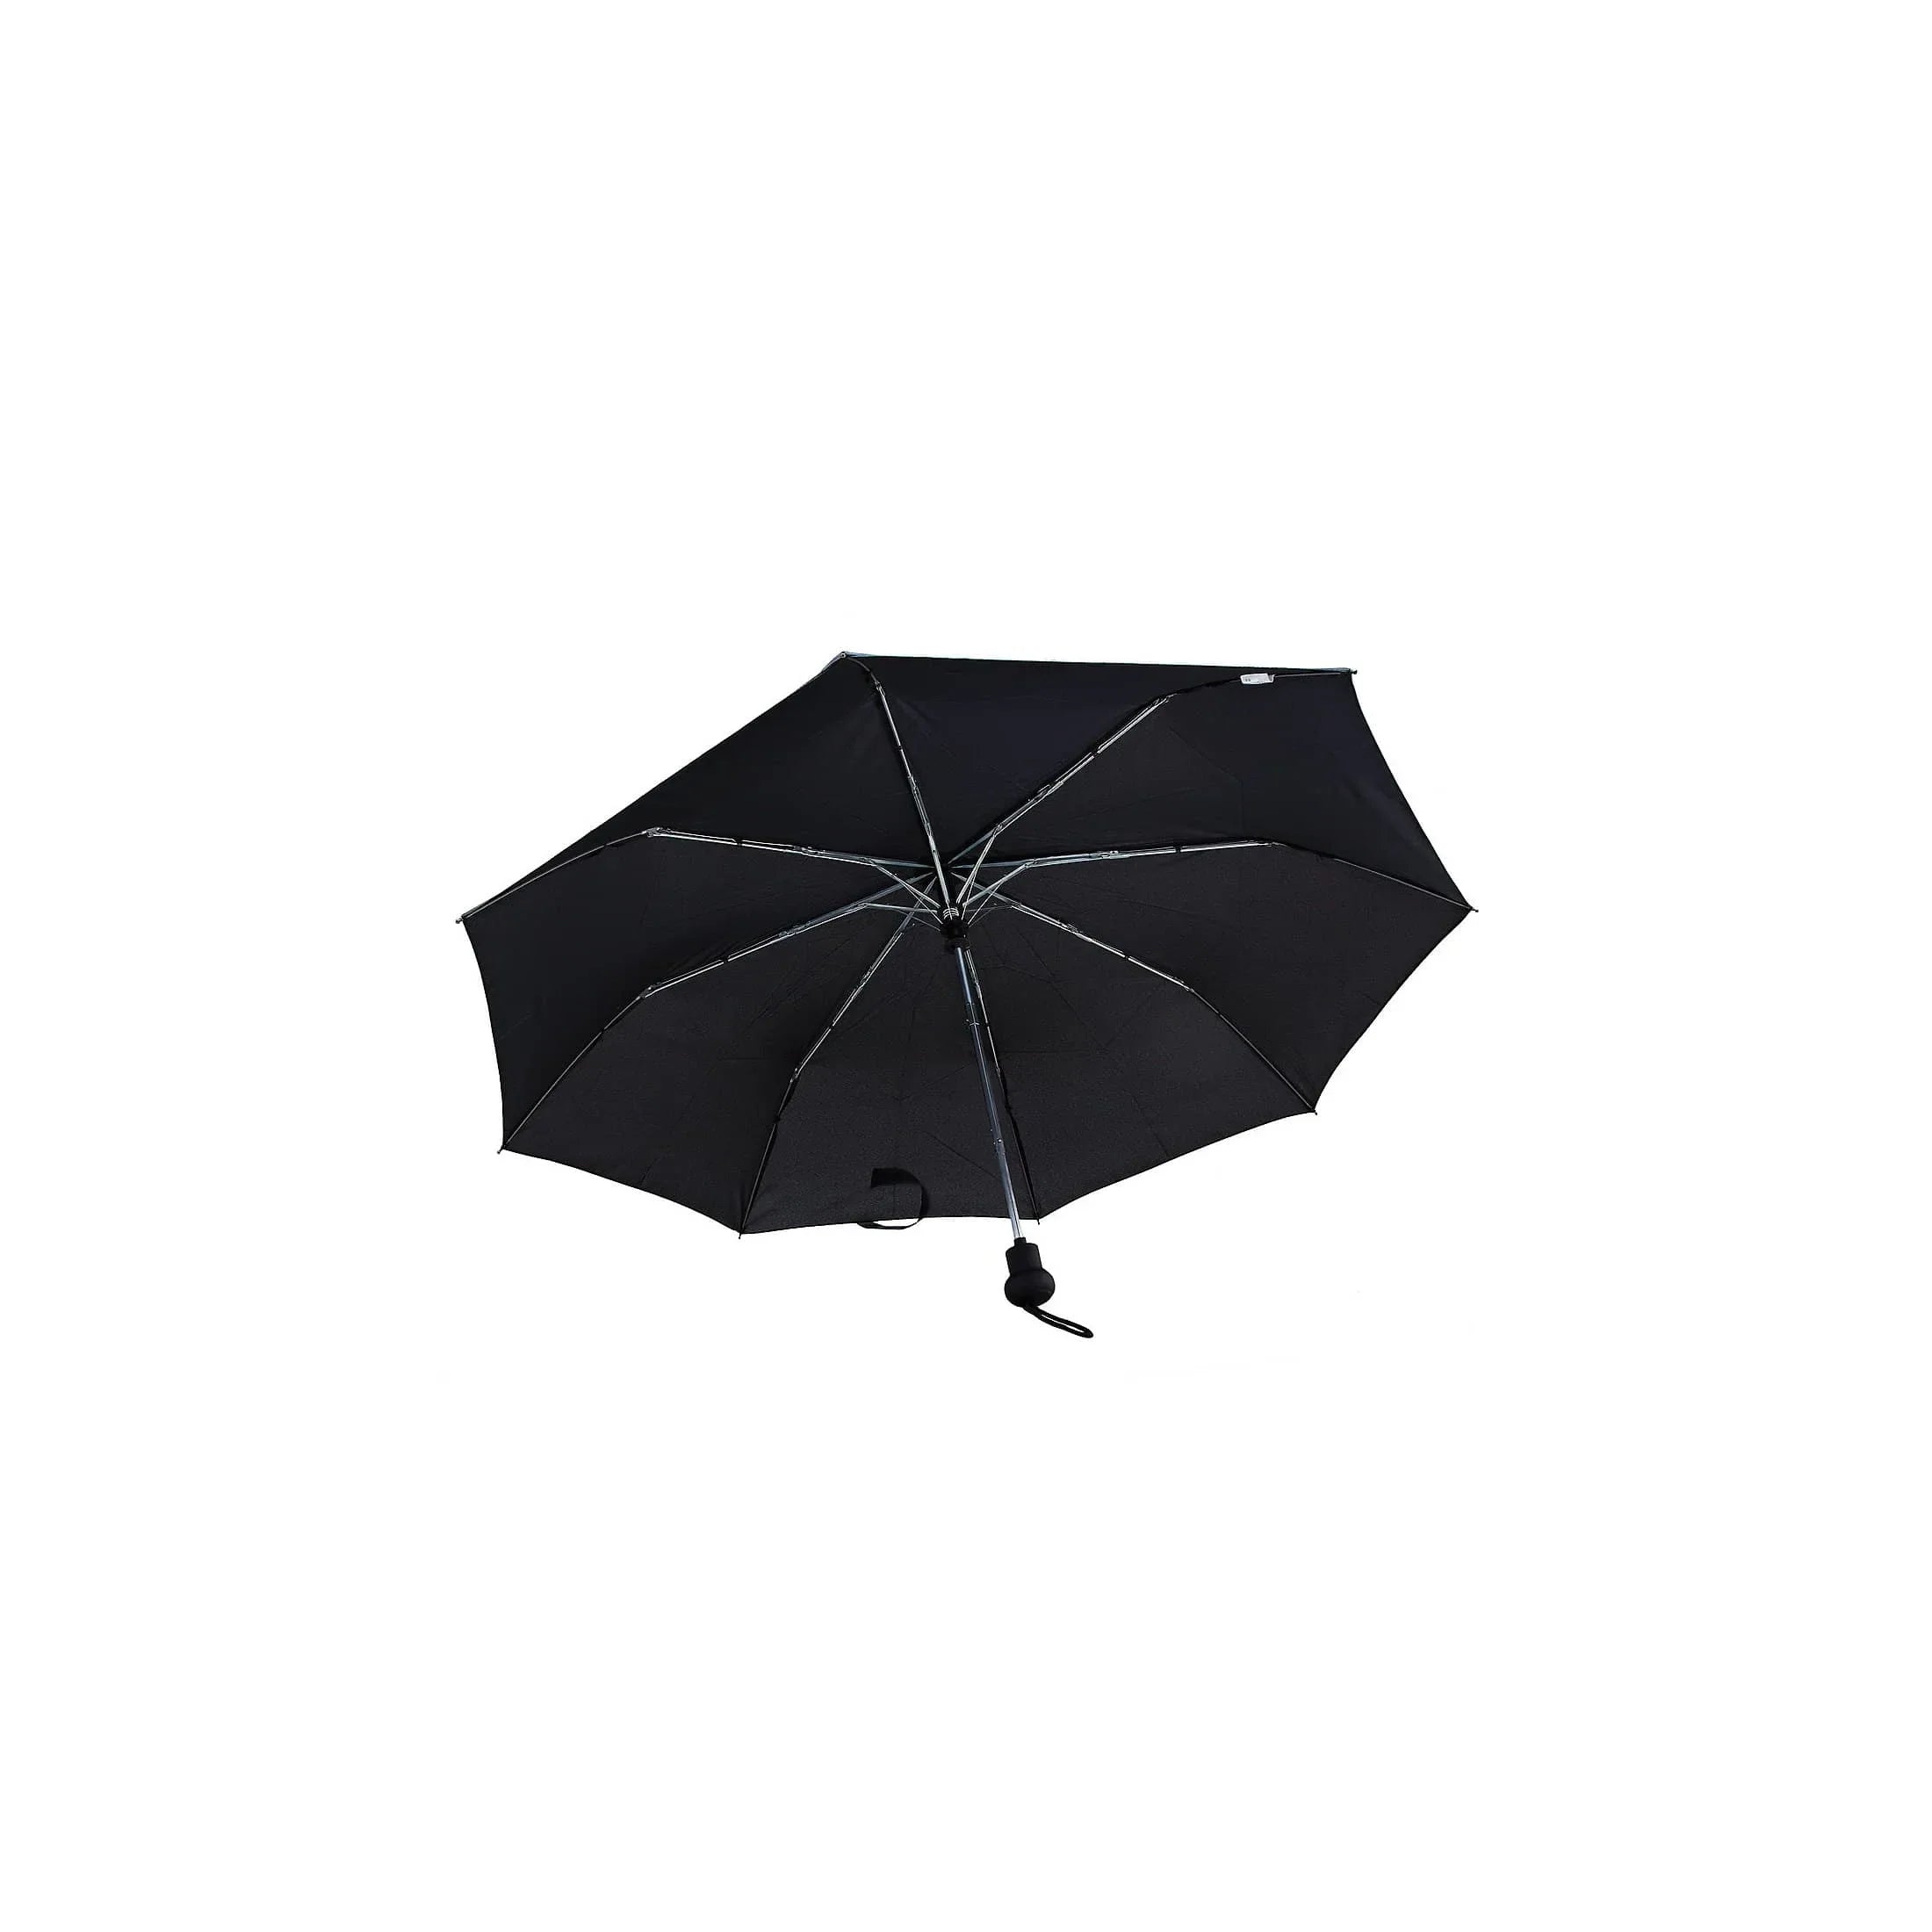 koffer-direkt.de Accessoires Mini parapluie automatique - noir